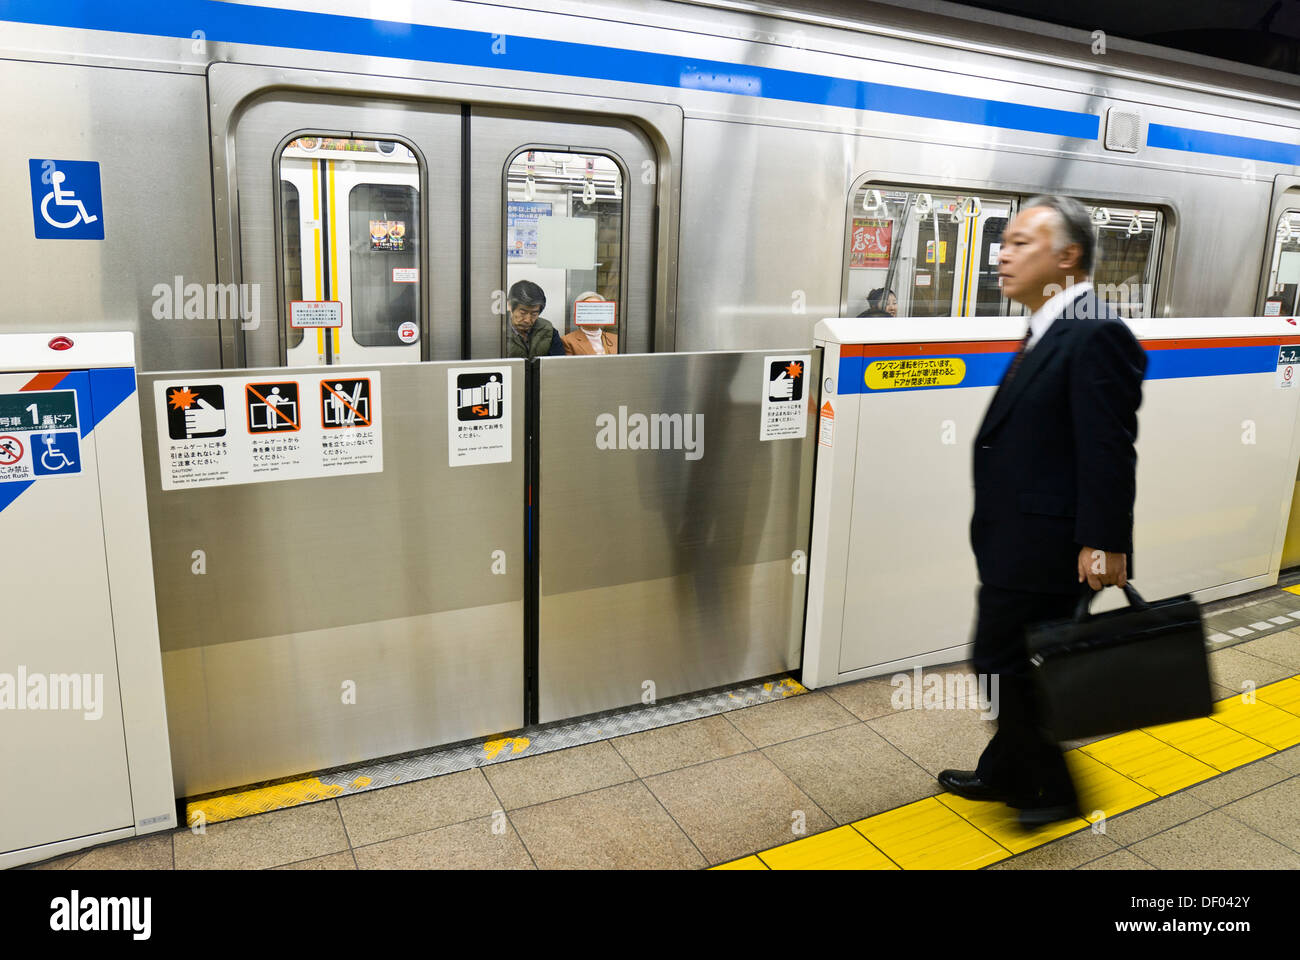 La stazione della metropolitana la piattaforma a Suidobashi, Tokyo, Giappone, ha cancelli di sicurezza che apre solo quando il treno arriva. Foto Stock